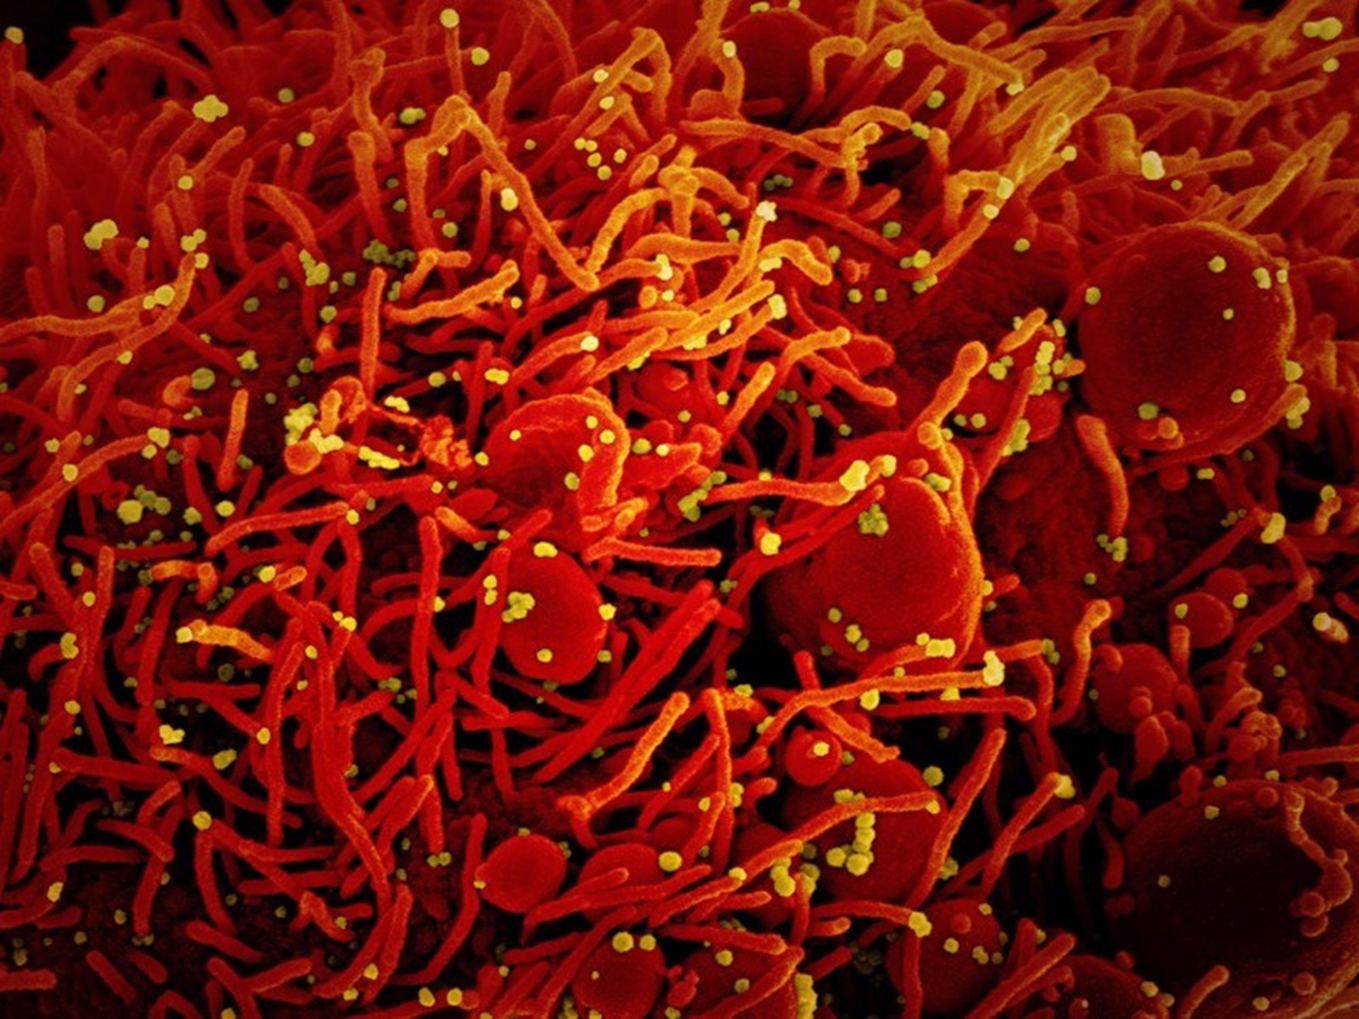 Virus SARS-CoV-2 trên tế bào chụp bằng kính hiển vi điện tử. Ảnh: NIAID / NIH / SPL